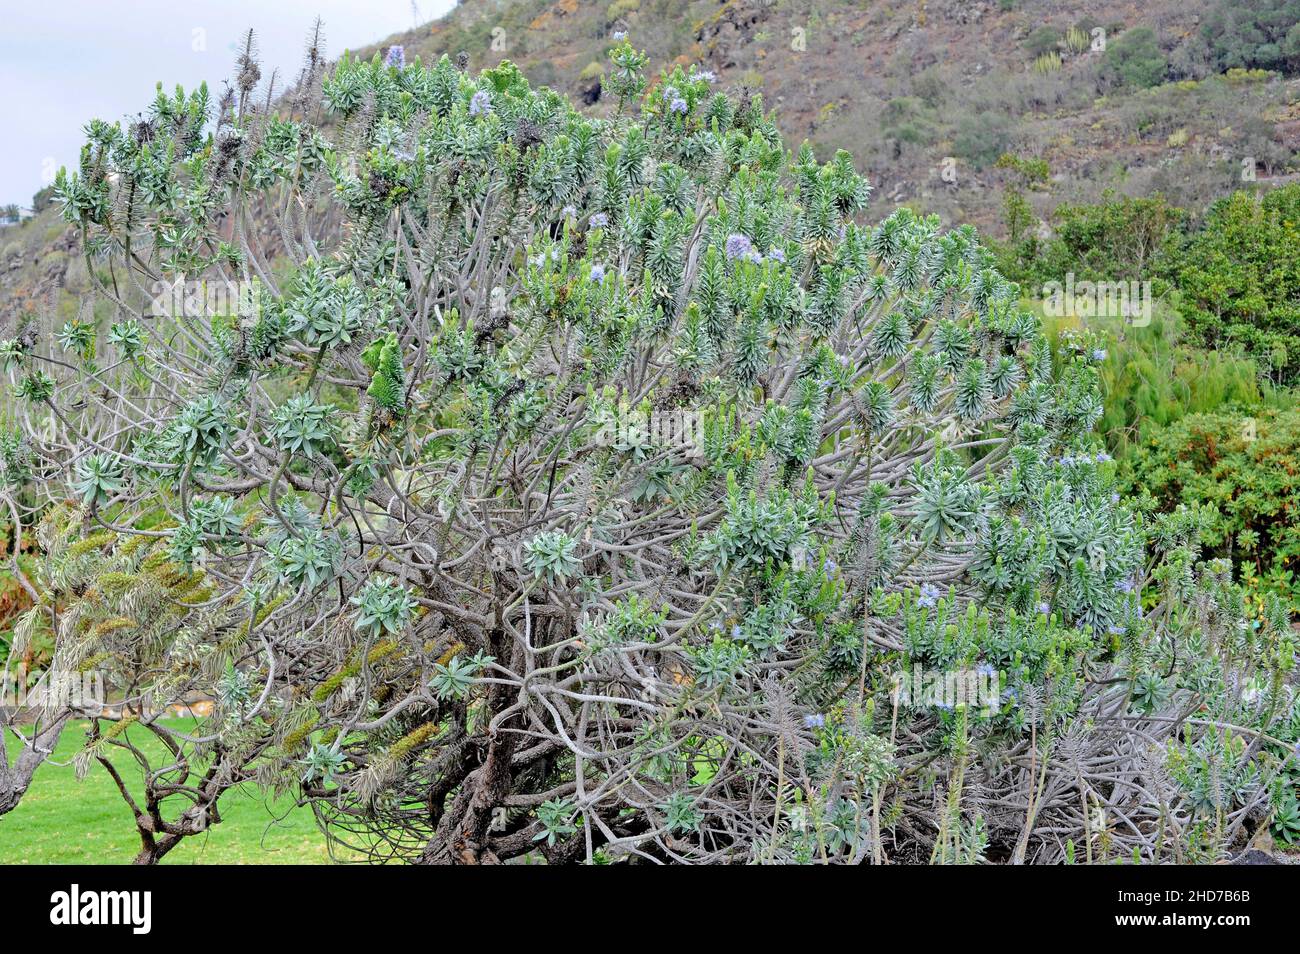 Taginaste de El Hierro (Echium hierrense) is a shrub endemic to El Hierro, Canary Islands, Spain. Stock Photo